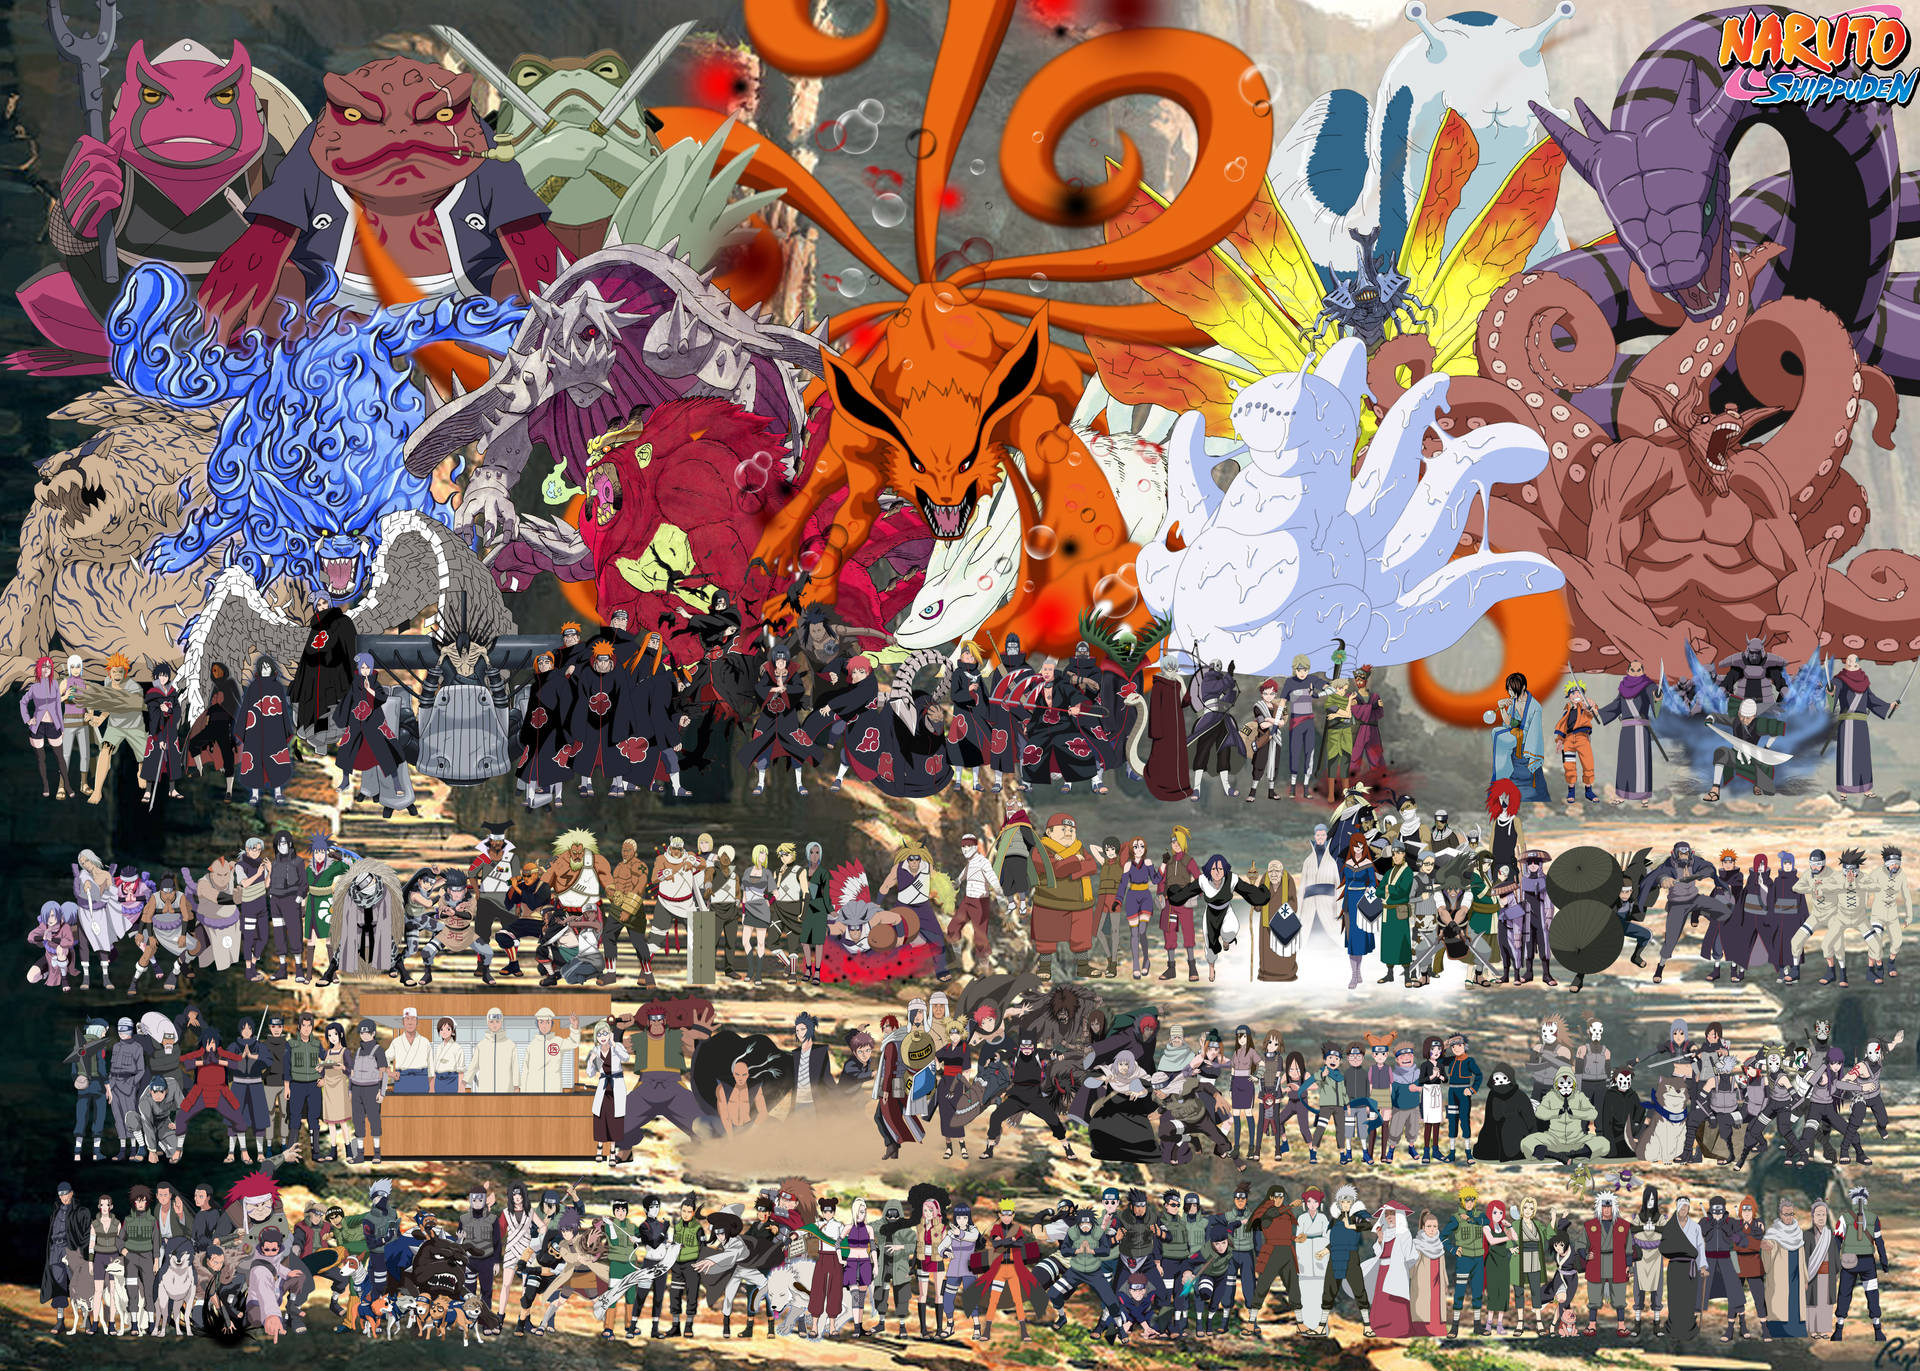 Skärmbakgrund Med Shippuden Karaktärerna Från Naruto I 4k-upplösning. Wallpaper